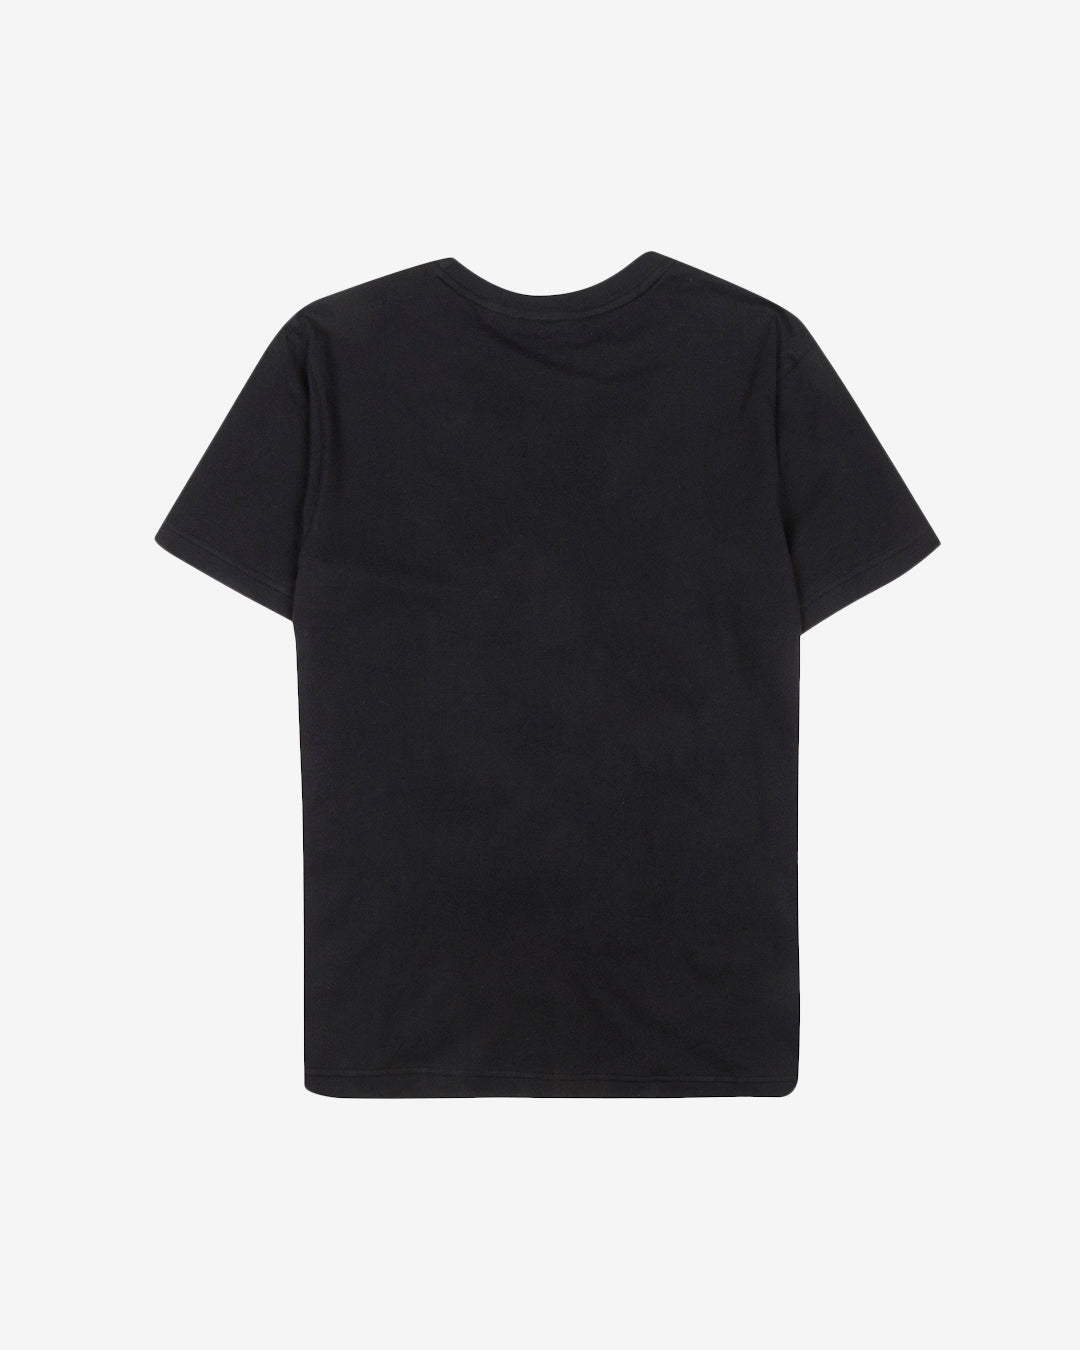 PFC: 002-1 - Mens T-Shirt - Onyx Black